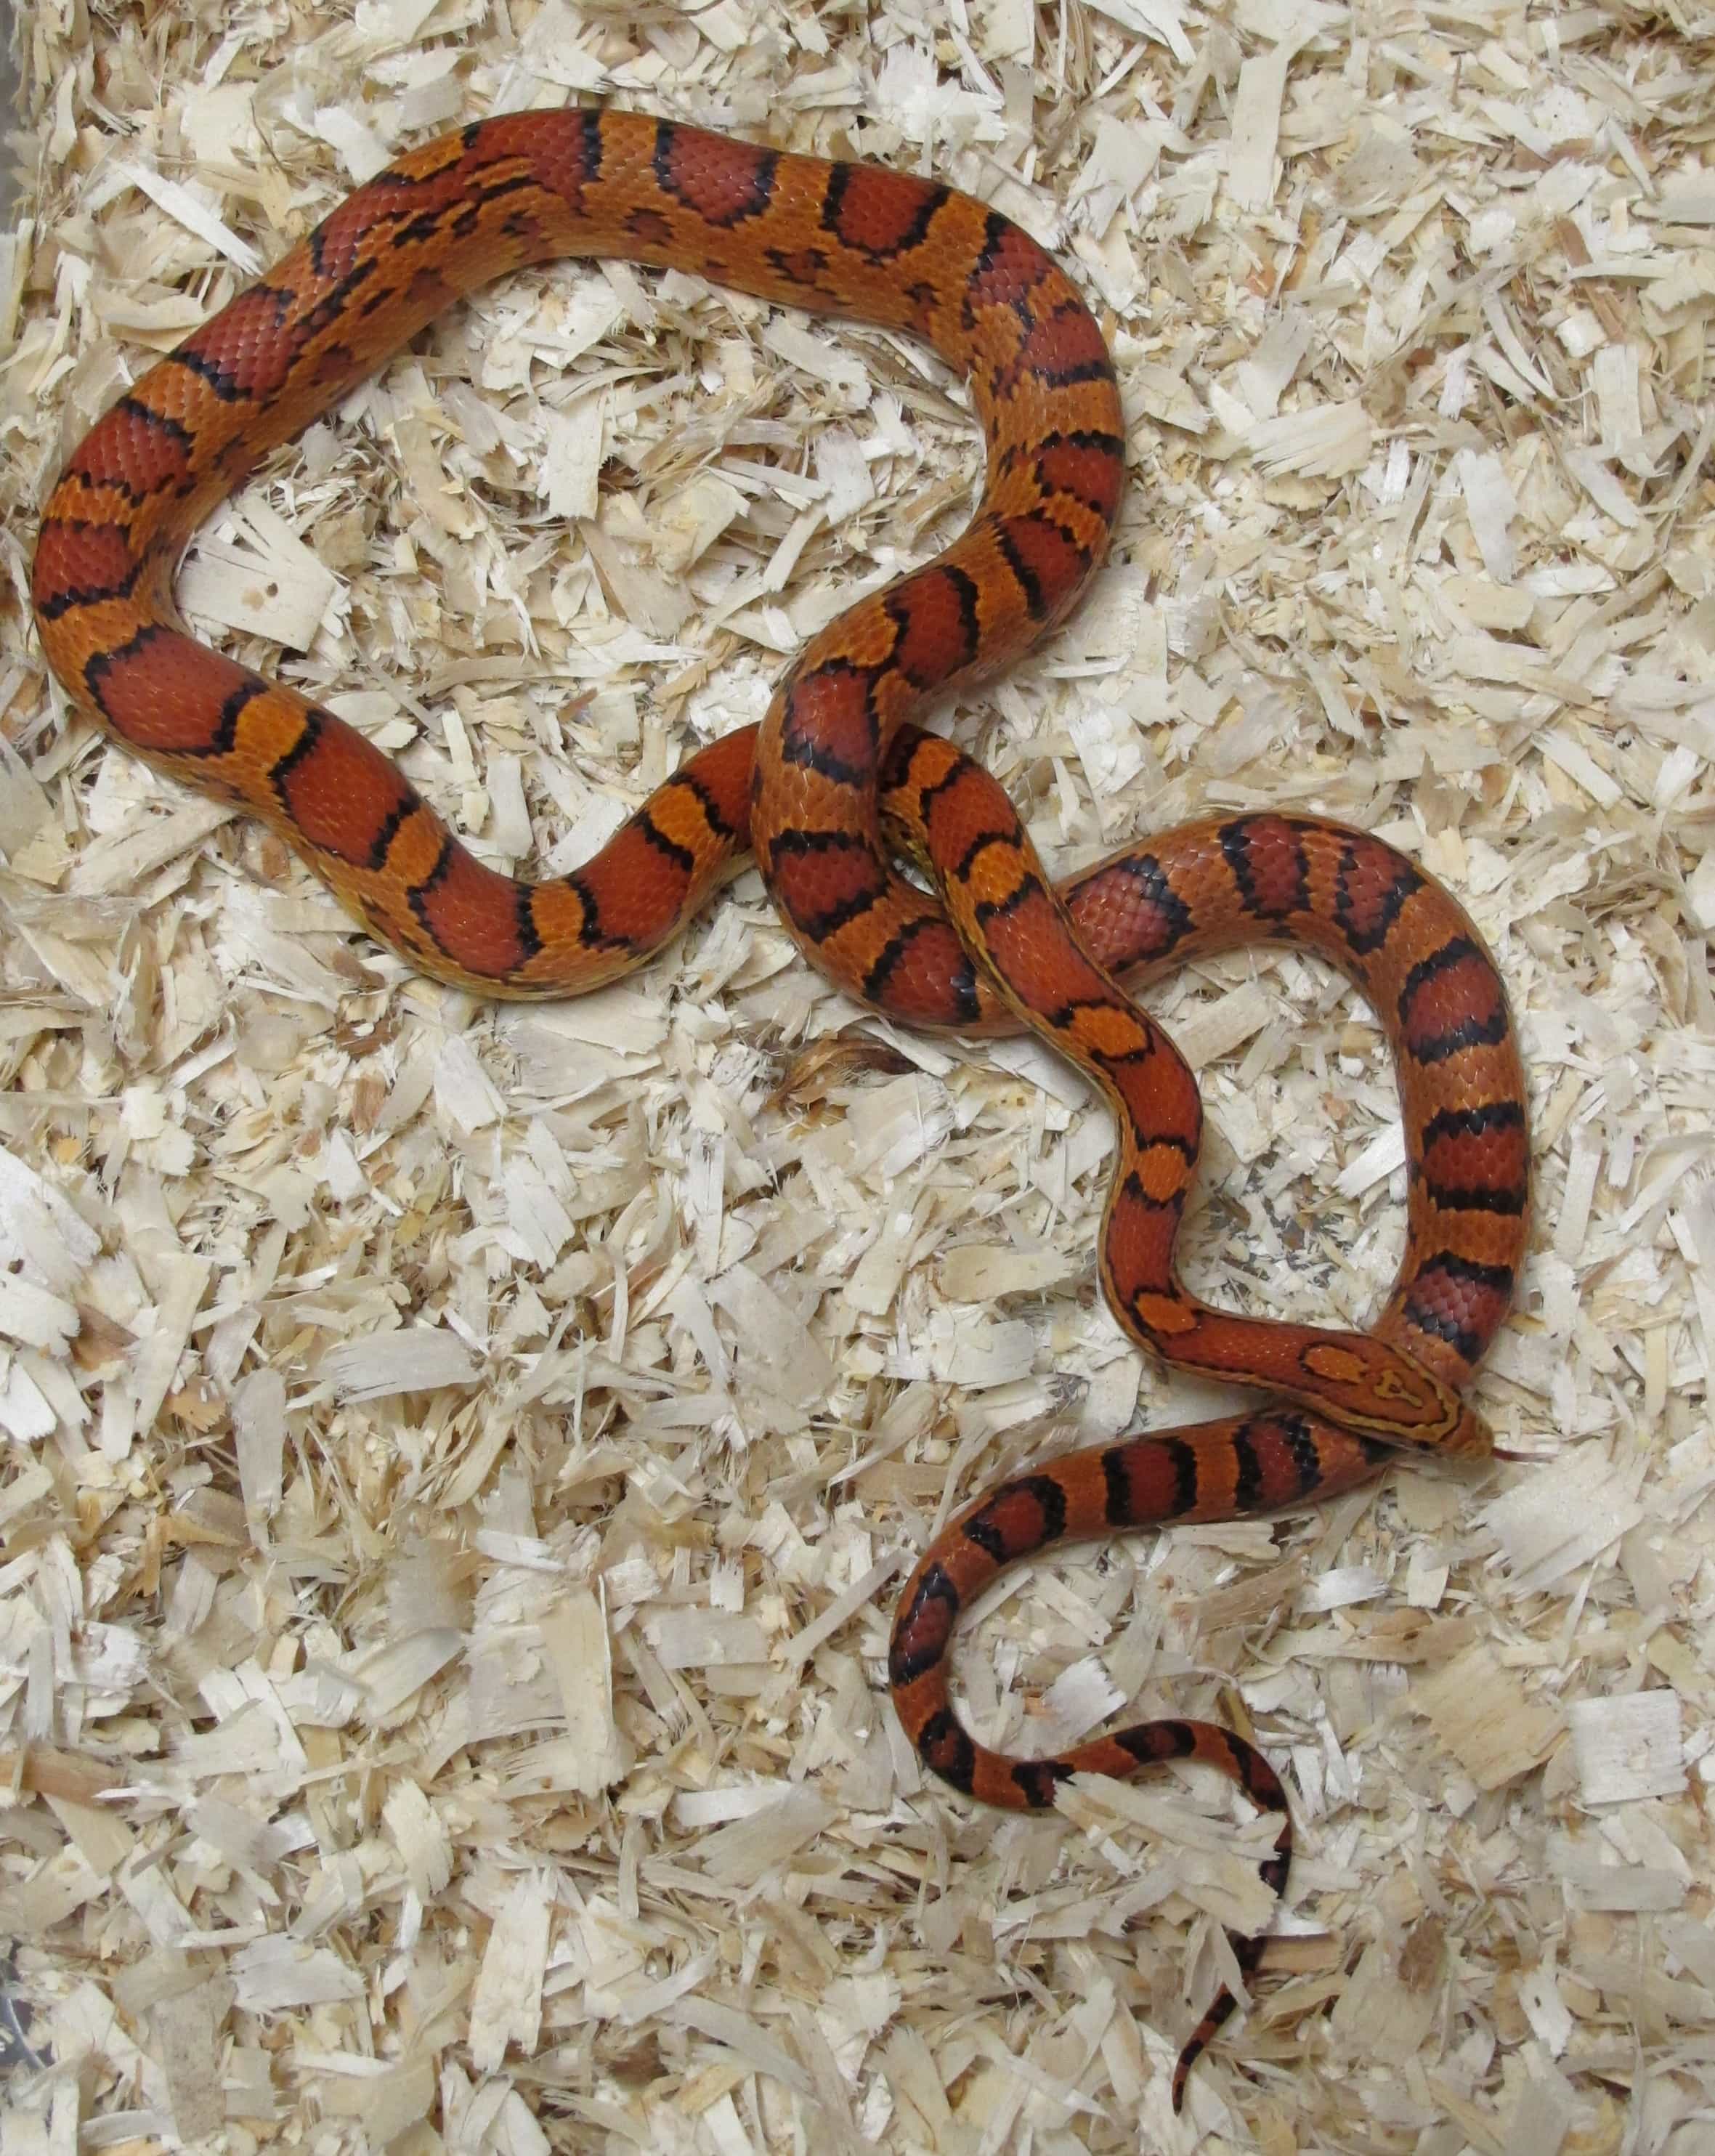 Female Snake